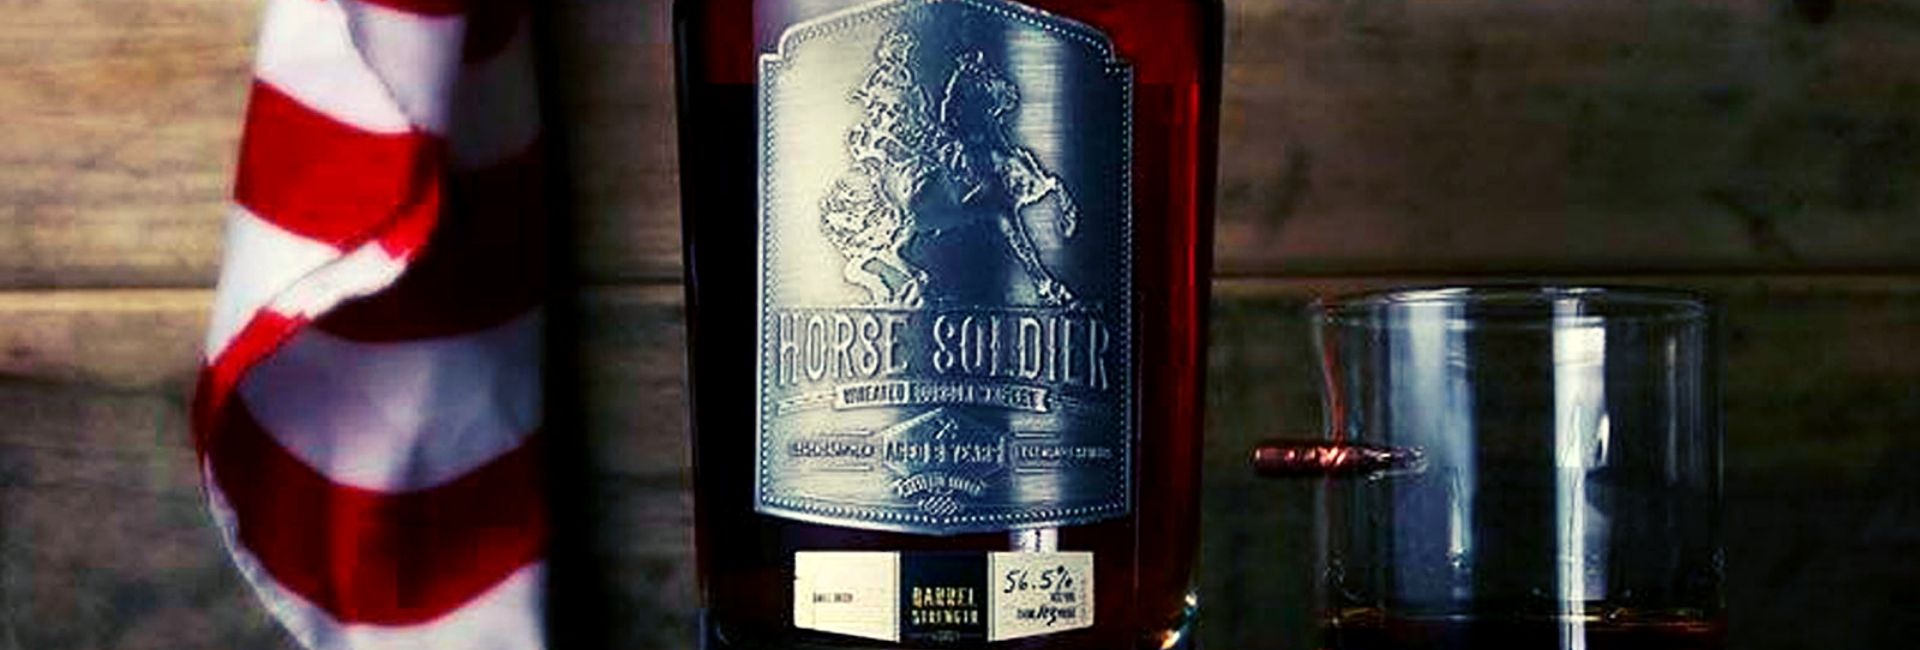 Horse Soldier Bourbon Review